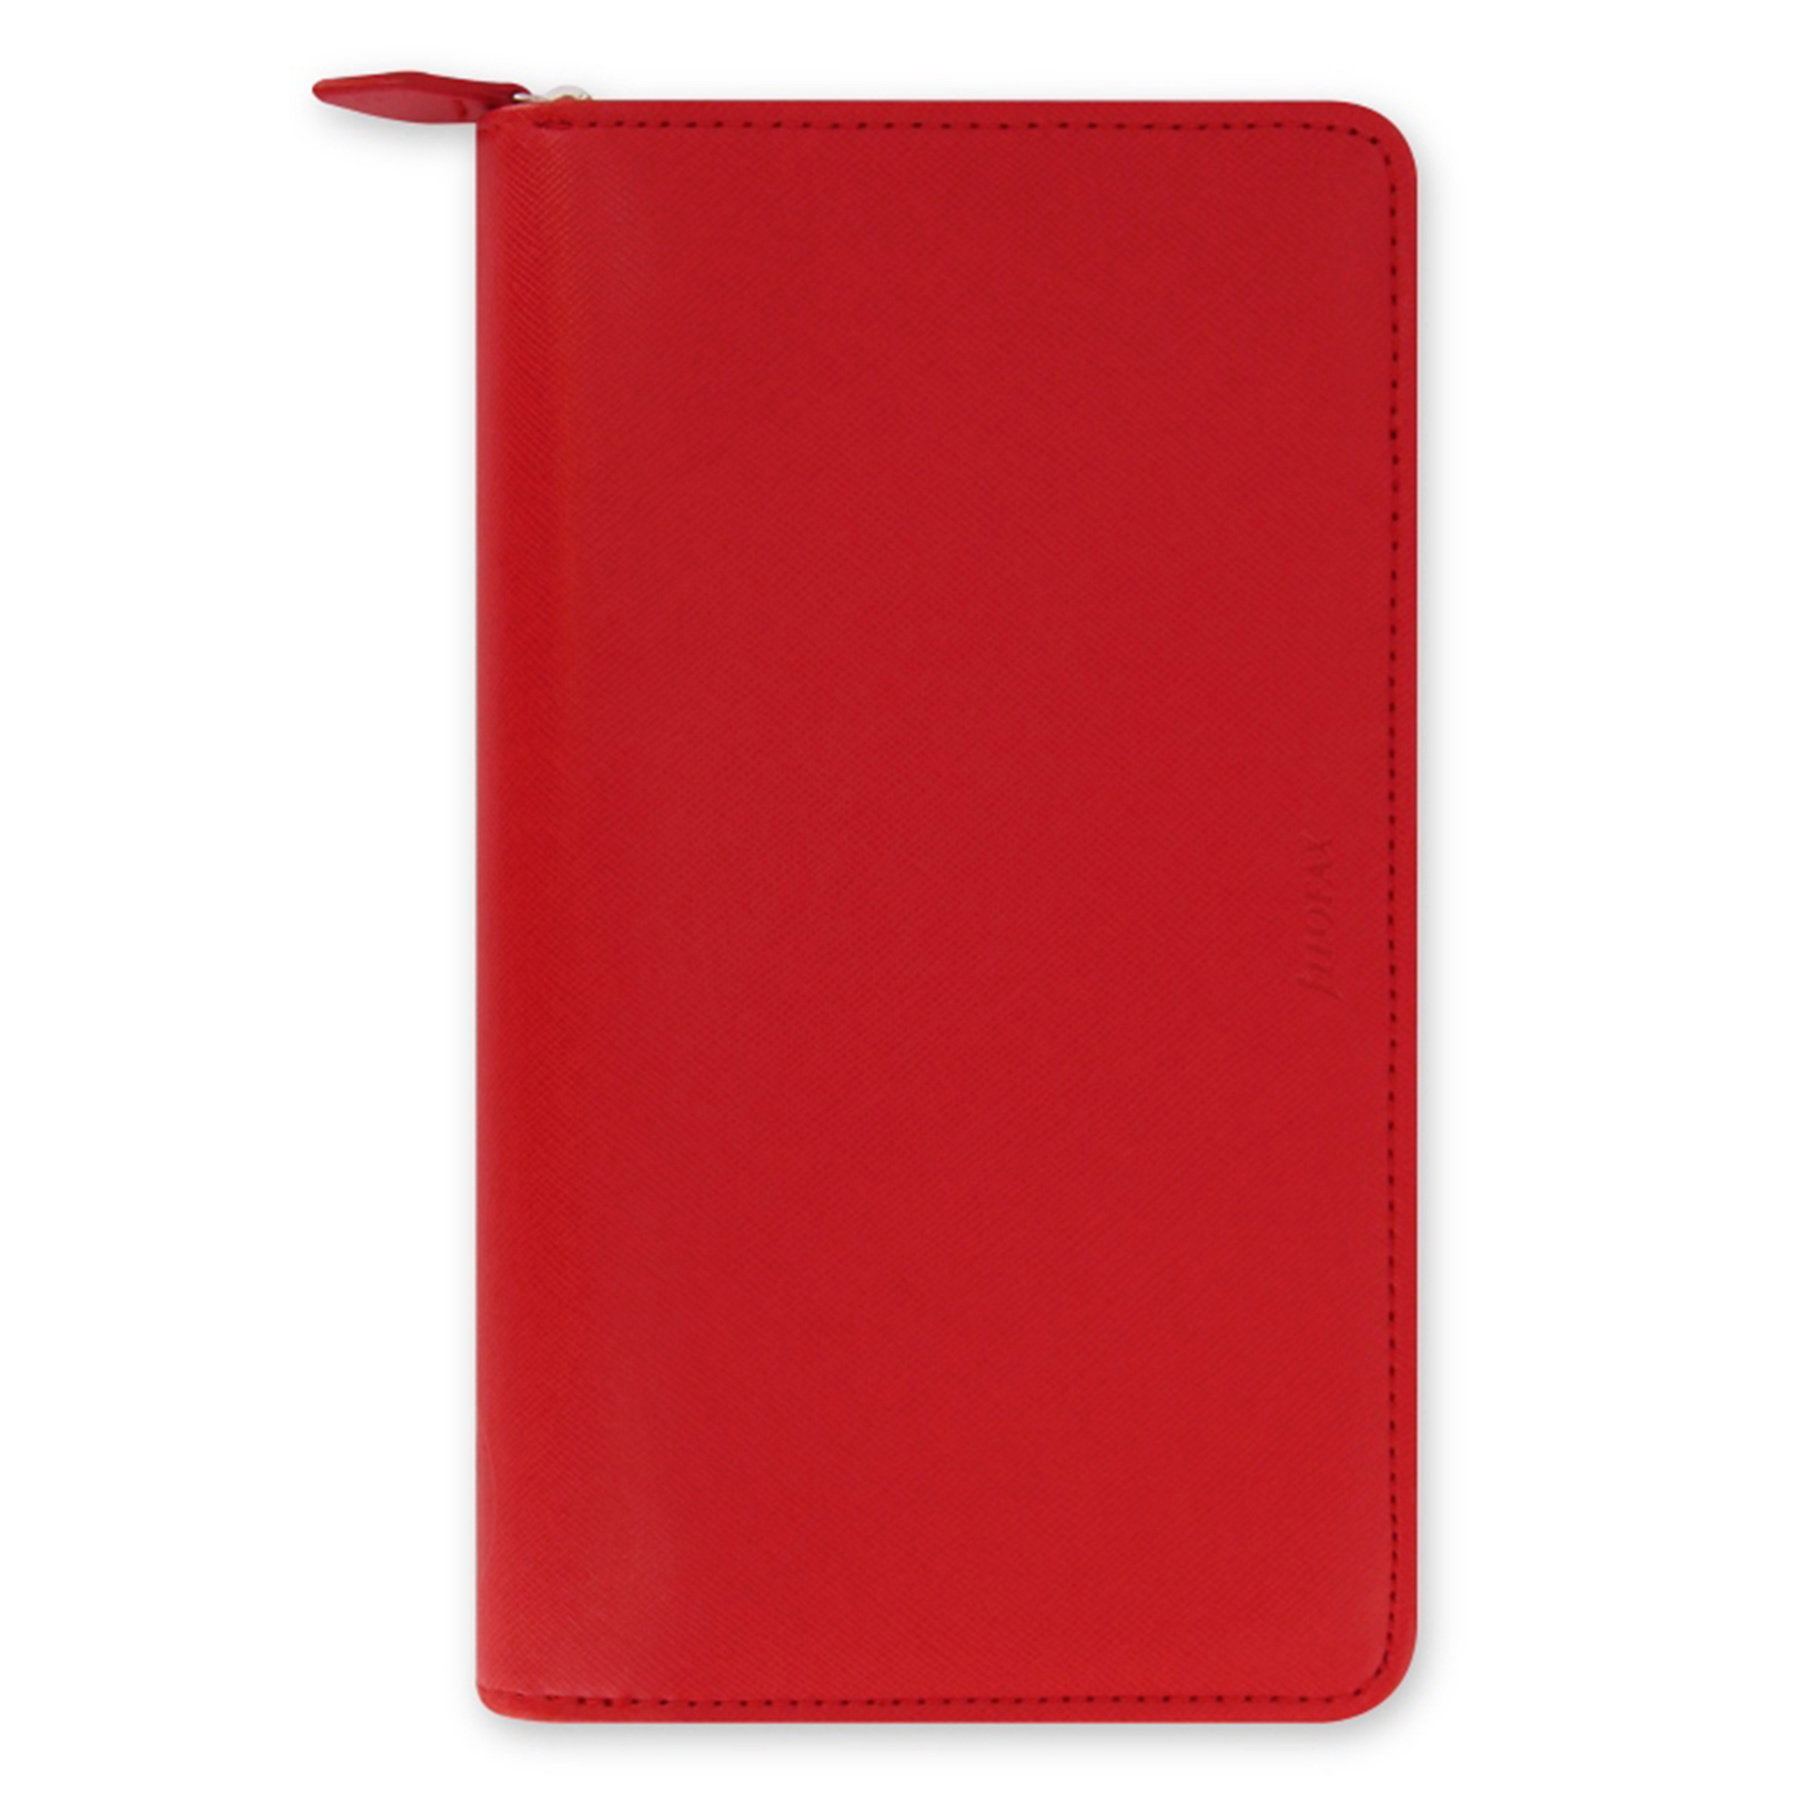 Filofax diář Saffiano, zip osobní compact, červená